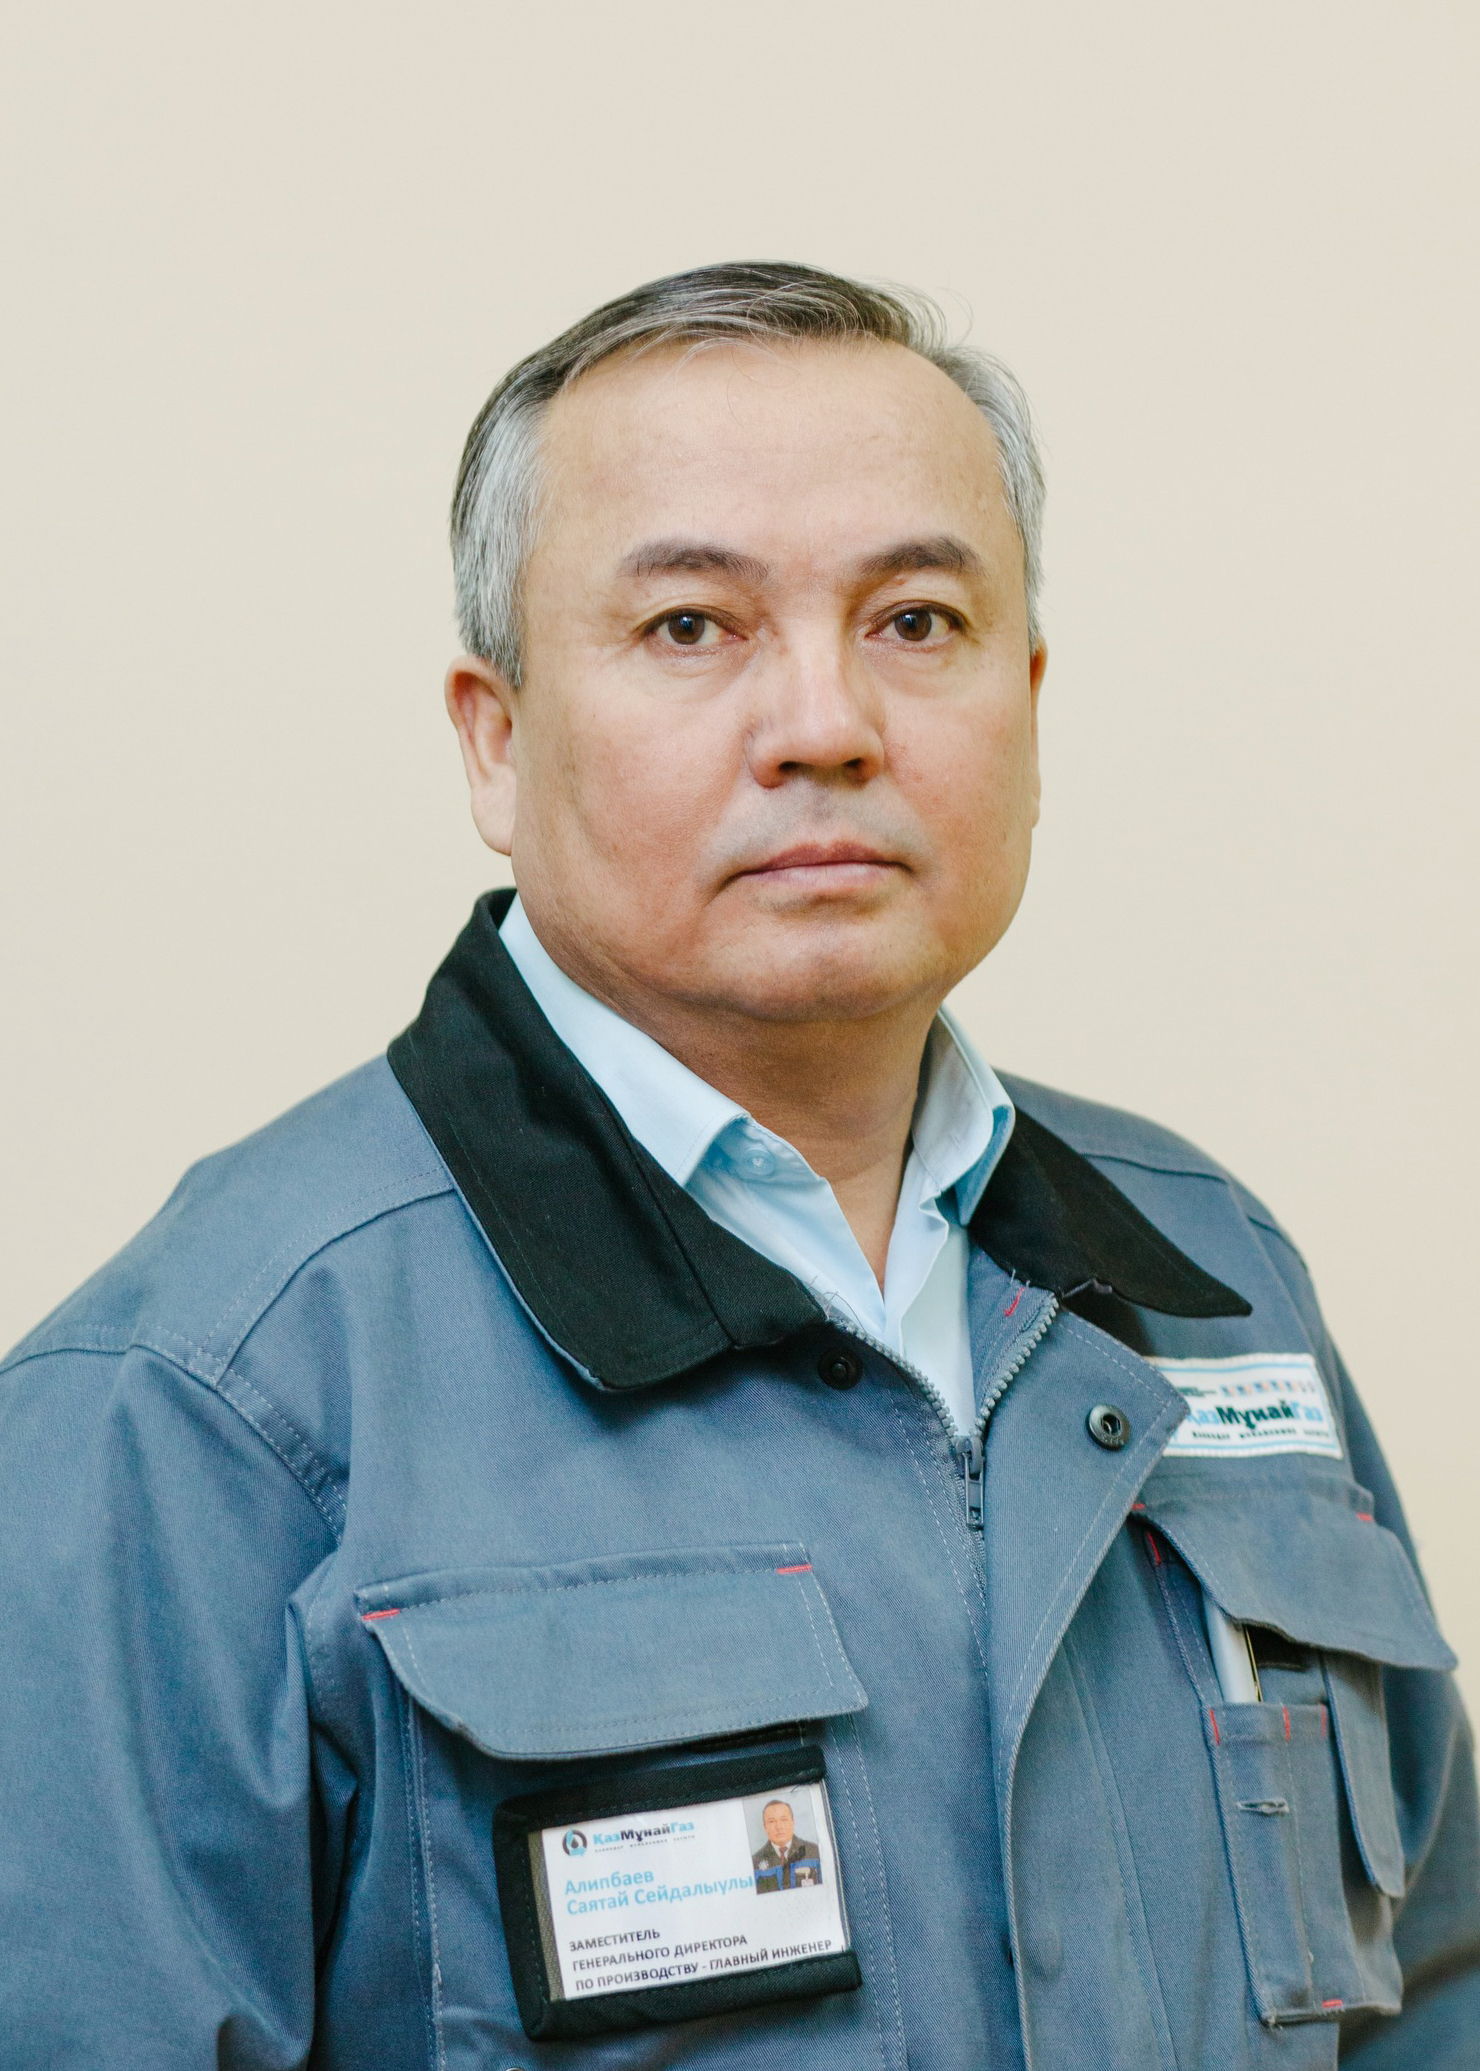 Саятай Сейдалыұлы Әліпбаев